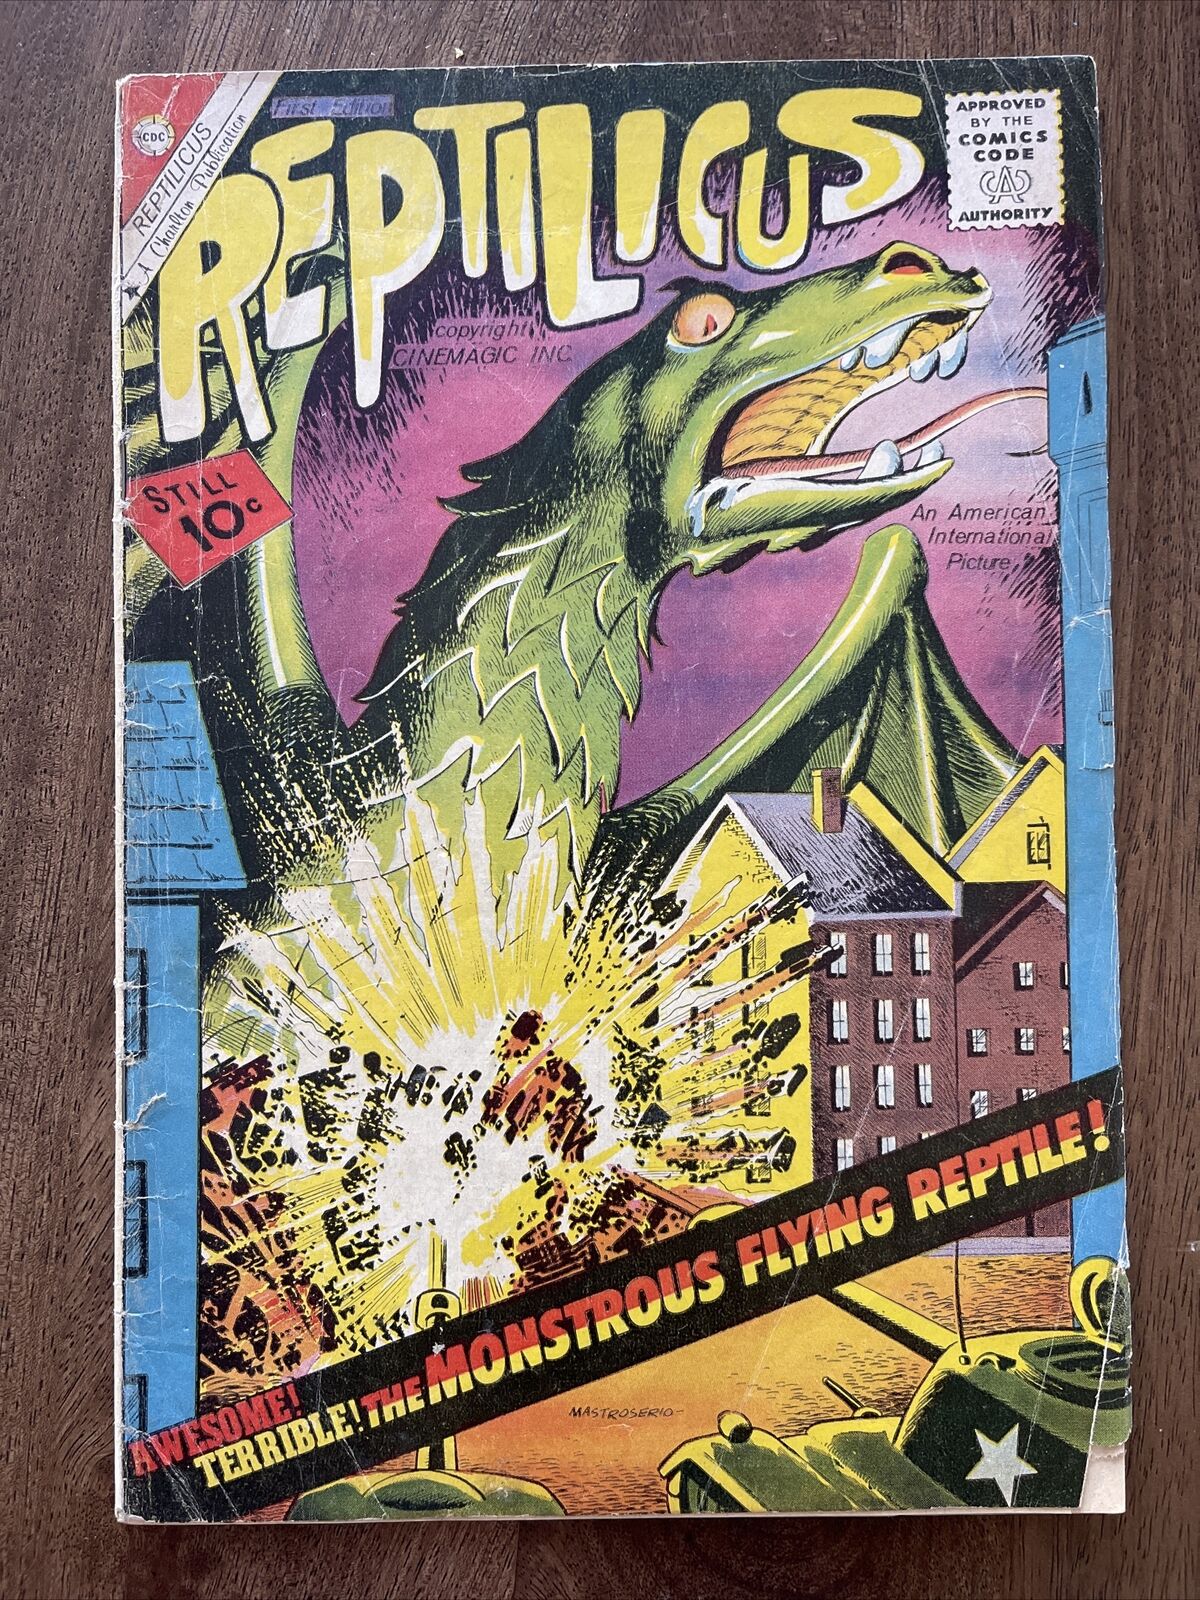 Reptilicus #1 - Charlton Comics 1961 - Tie-in To Original Monster Movie